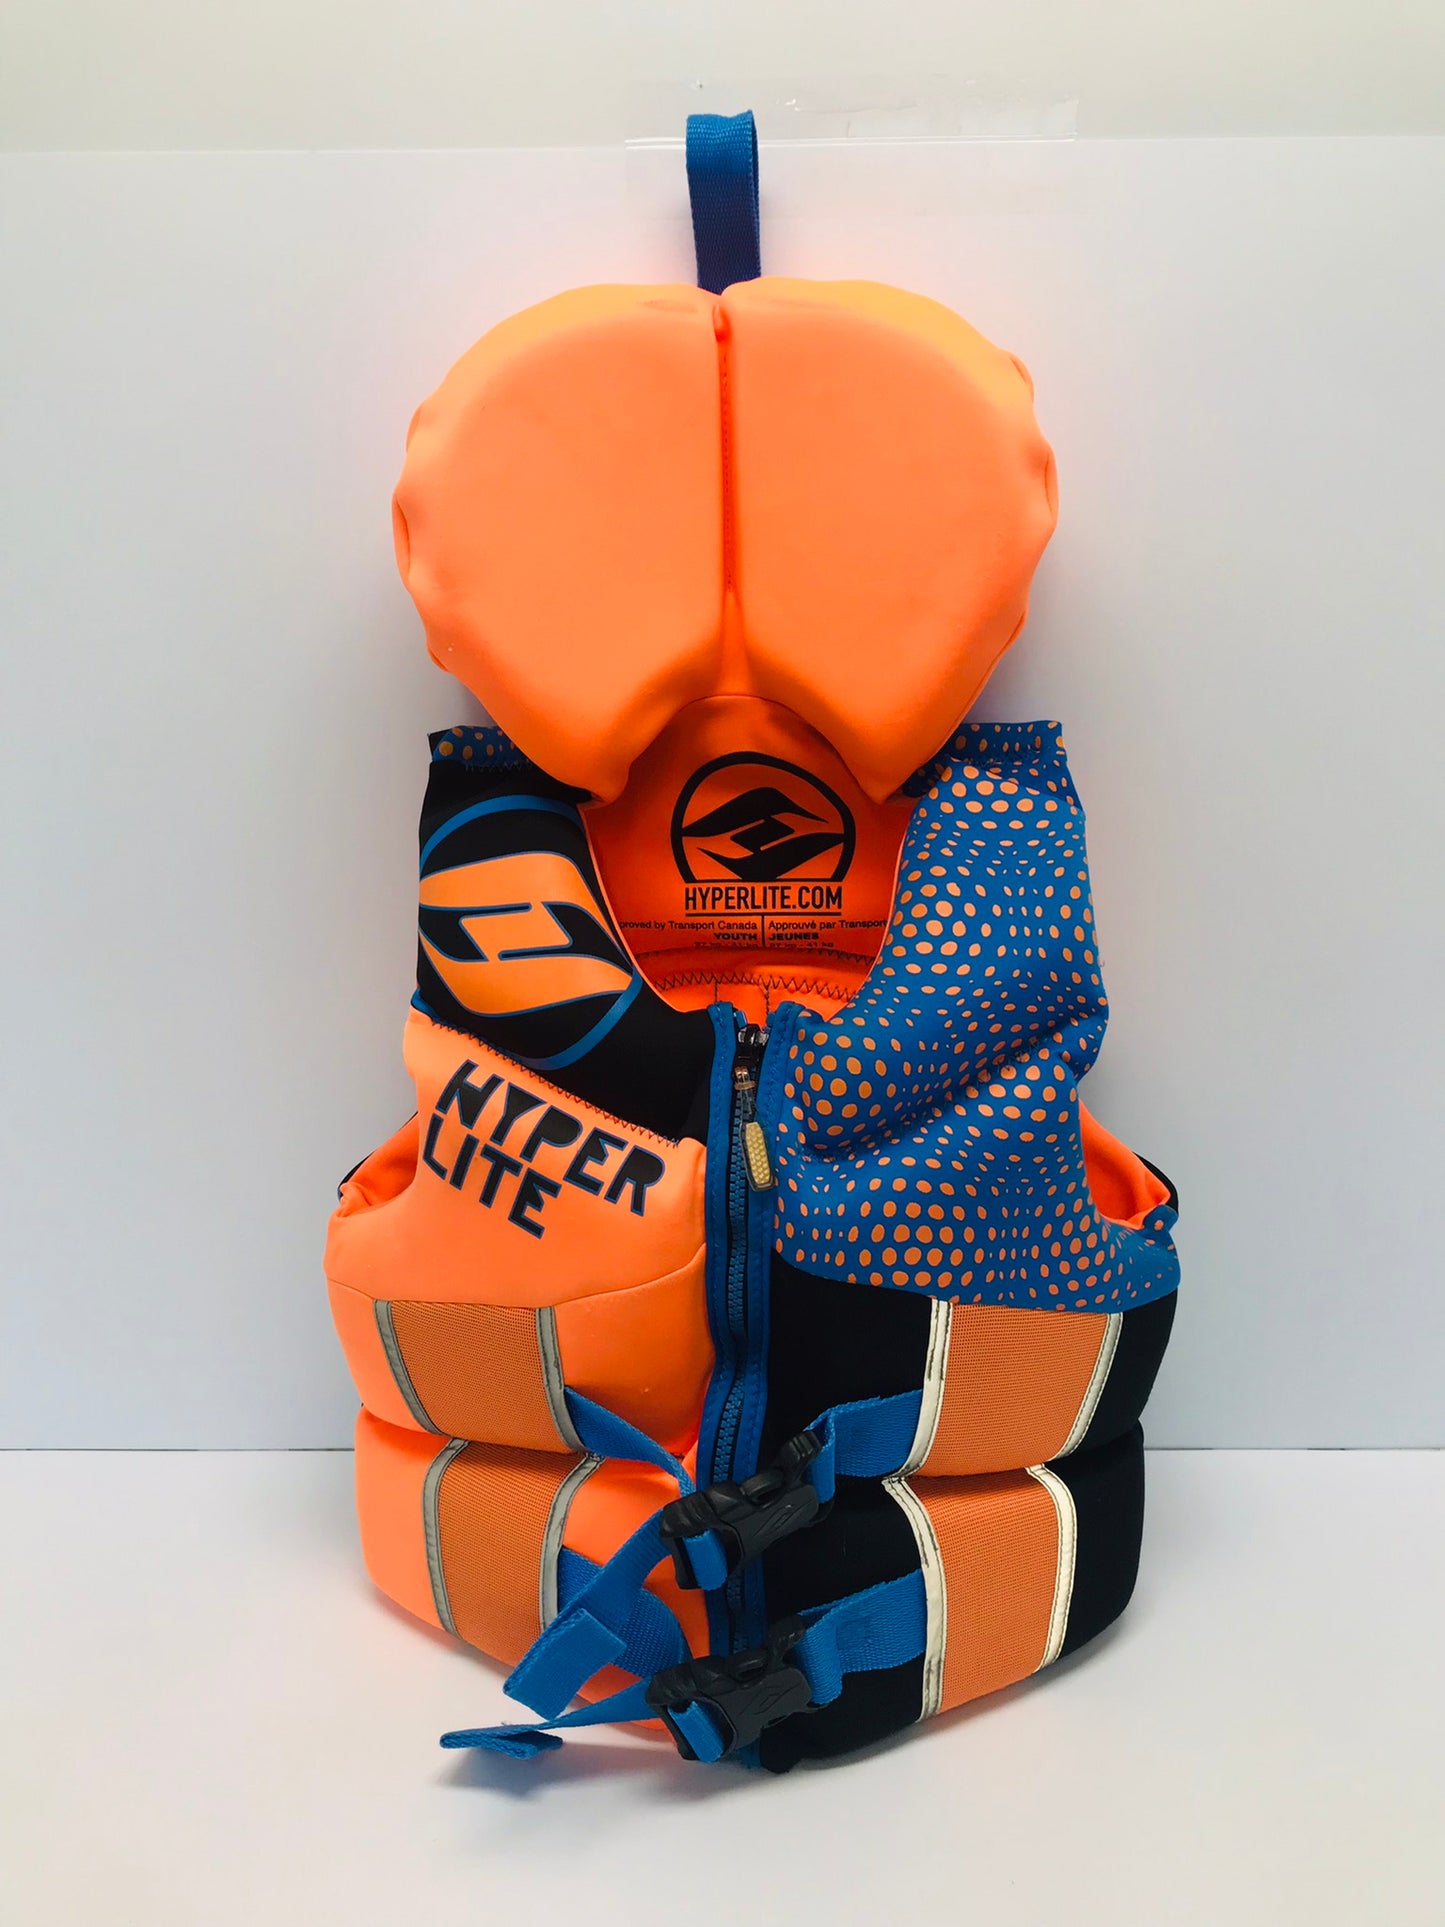 Life Jacket Child Size 60-90 Youth Hyperlite Orange and Blue Neoprene